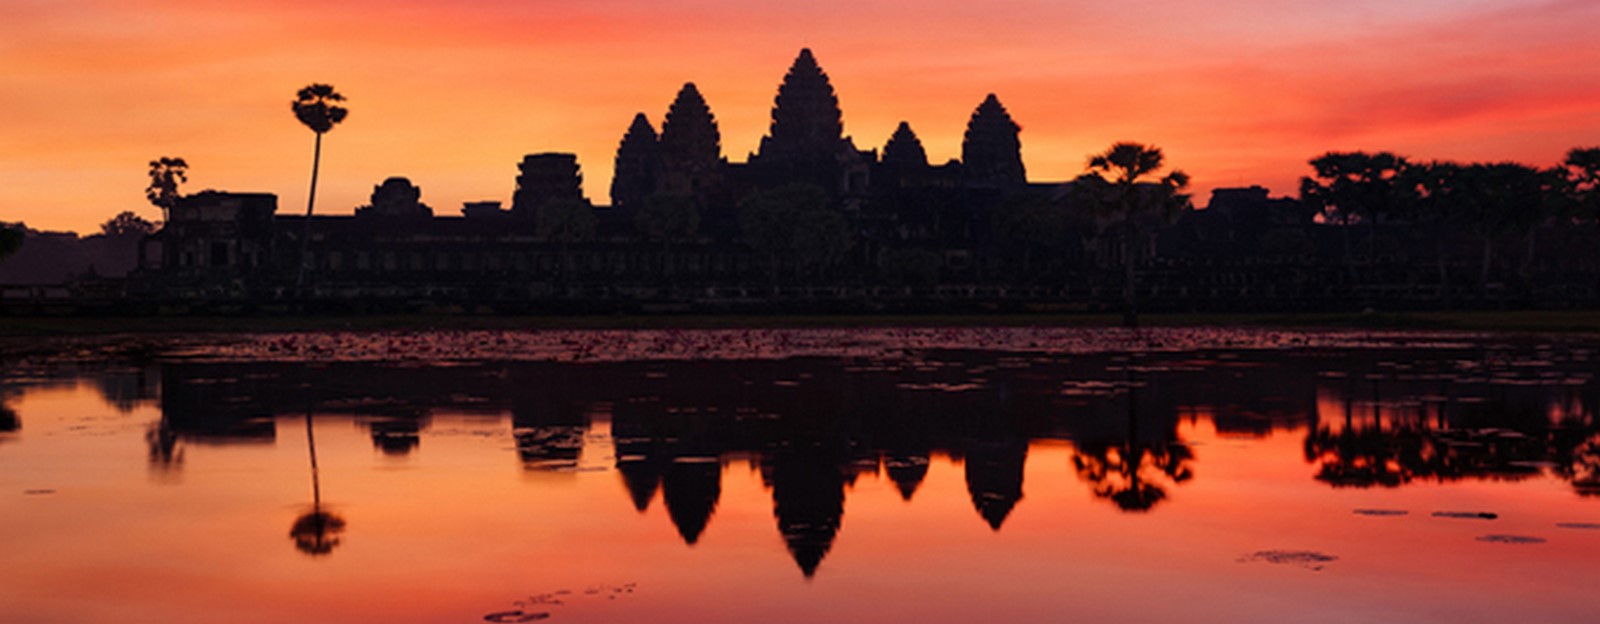 Angkor Wat and its magnificent Khmer story Sheet1